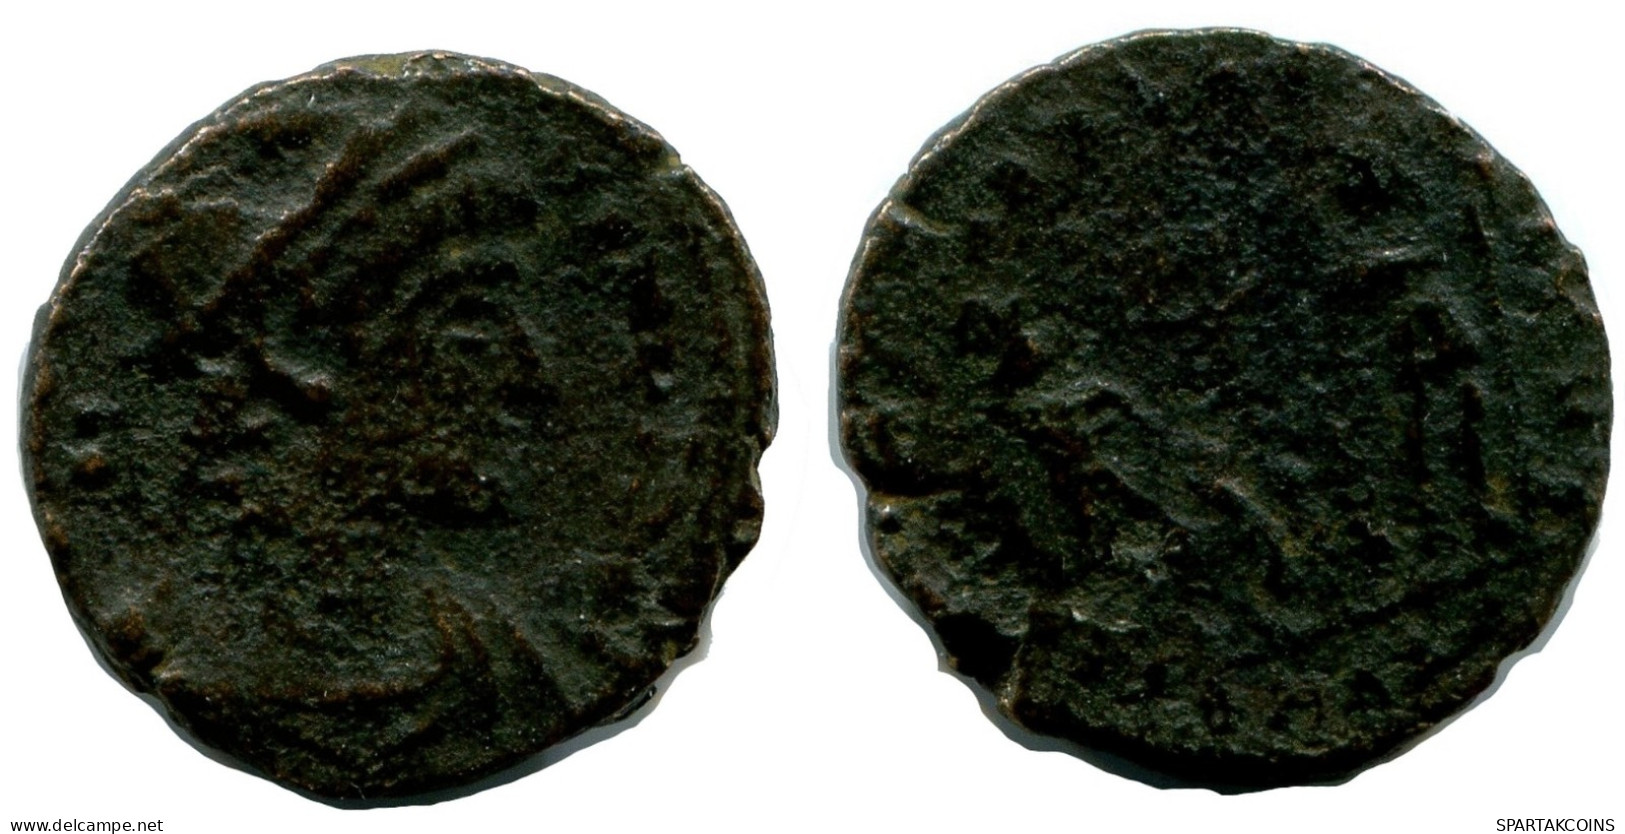 ROMAN Moneda MINTED IN ALEKSANDRIA FOUND IN IHNASYAH HOARD EGYPT #ANC10187.14.E.A - El Imperio Christiano (307 / 363)